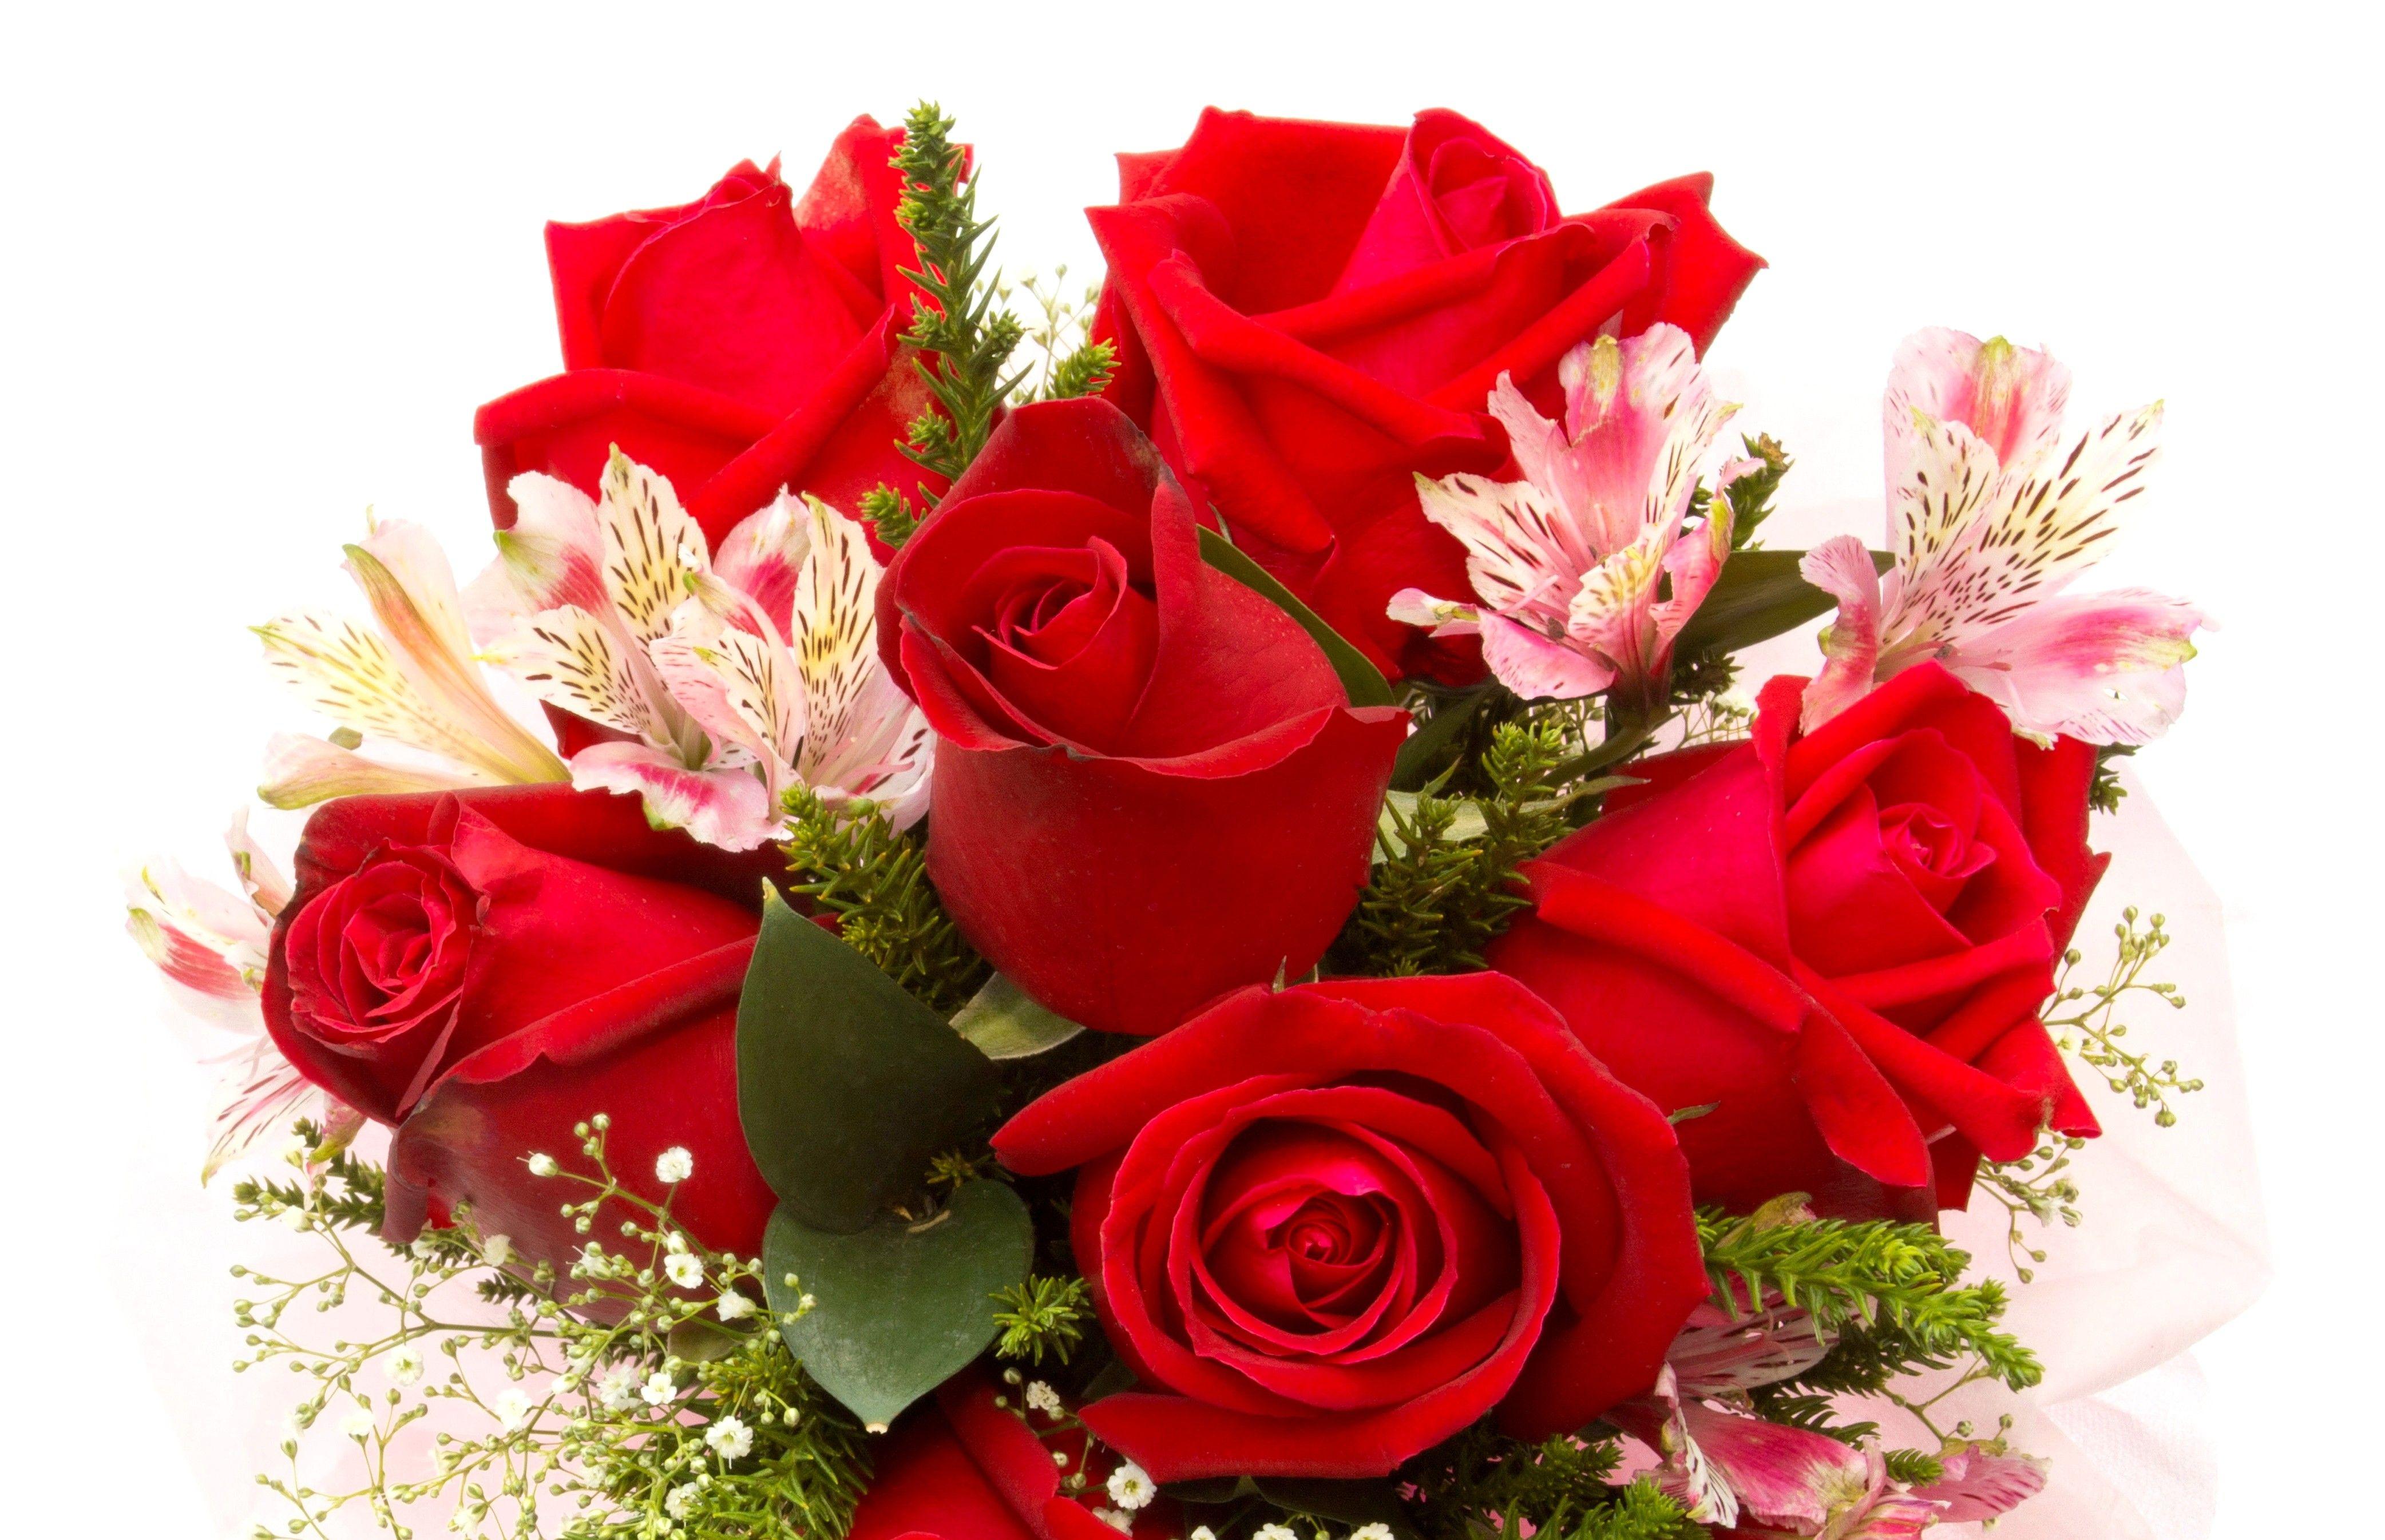 دسته گل رز قرمز در یک نمای دیدنی برای ایده گل‌فروشی